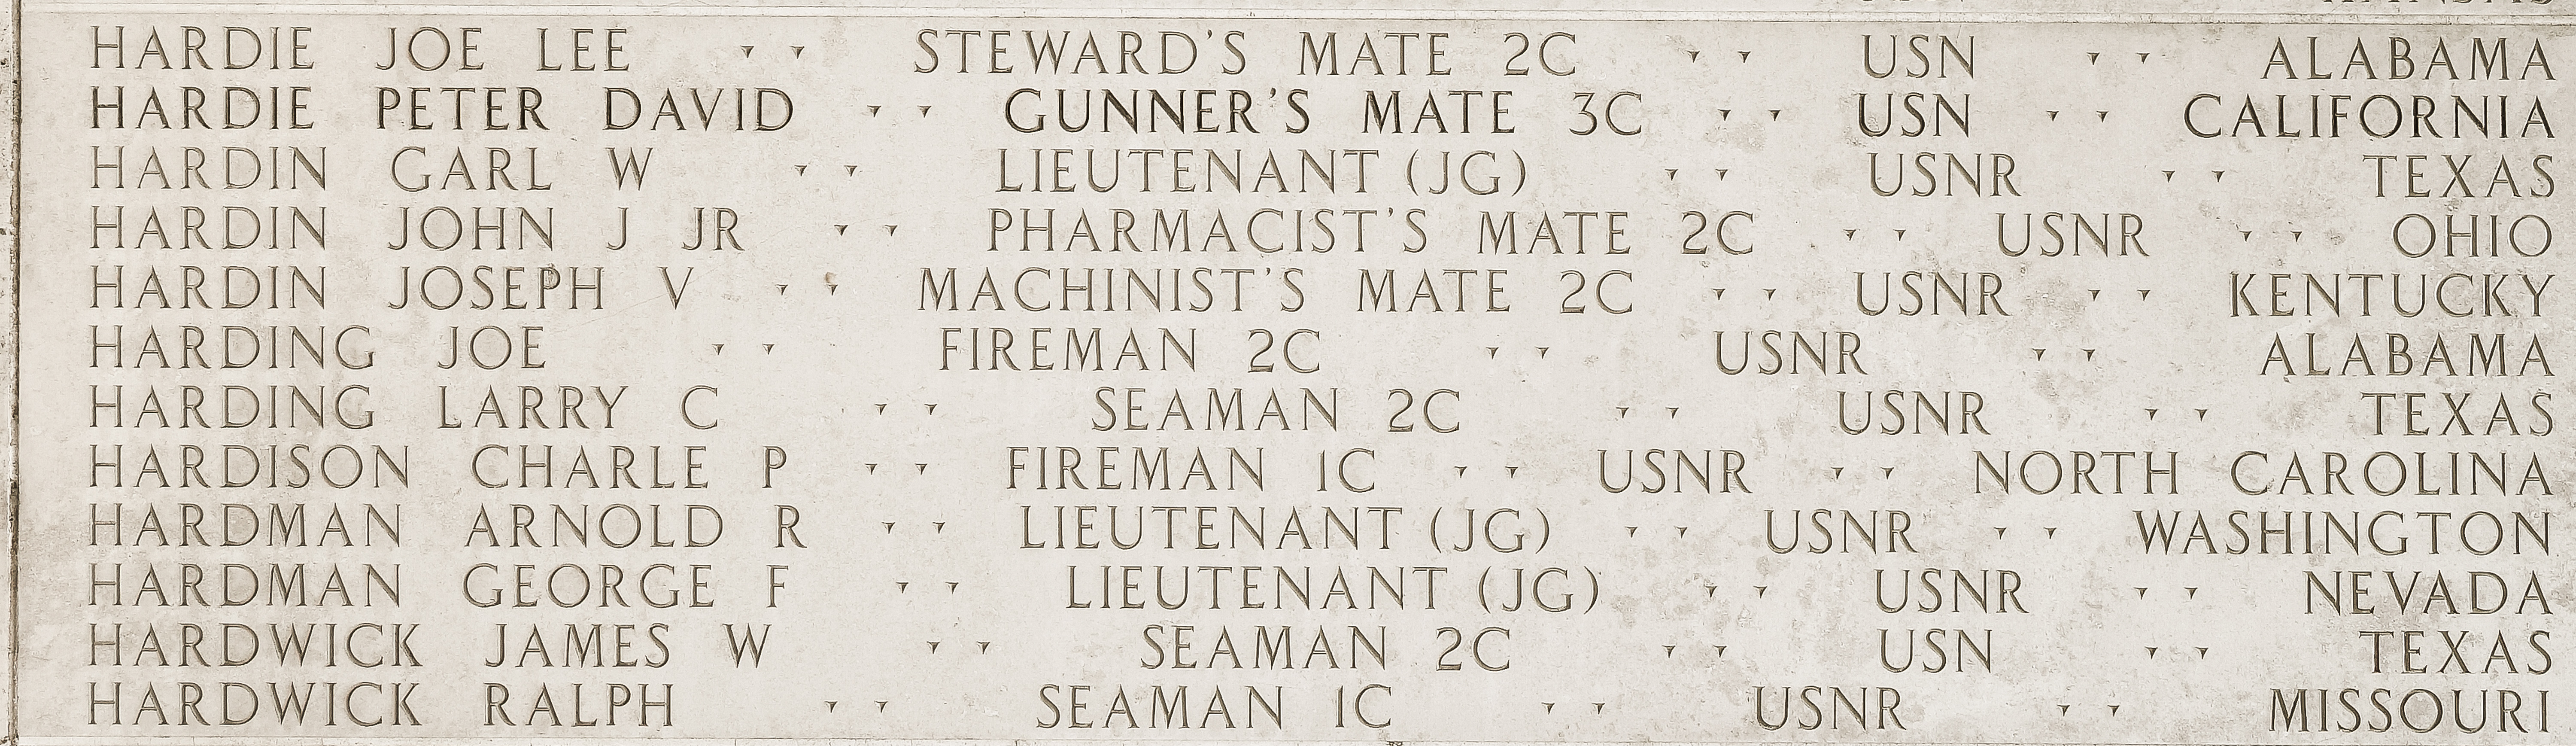 Arnold R. Hardman, Lieutenant Junior Grade